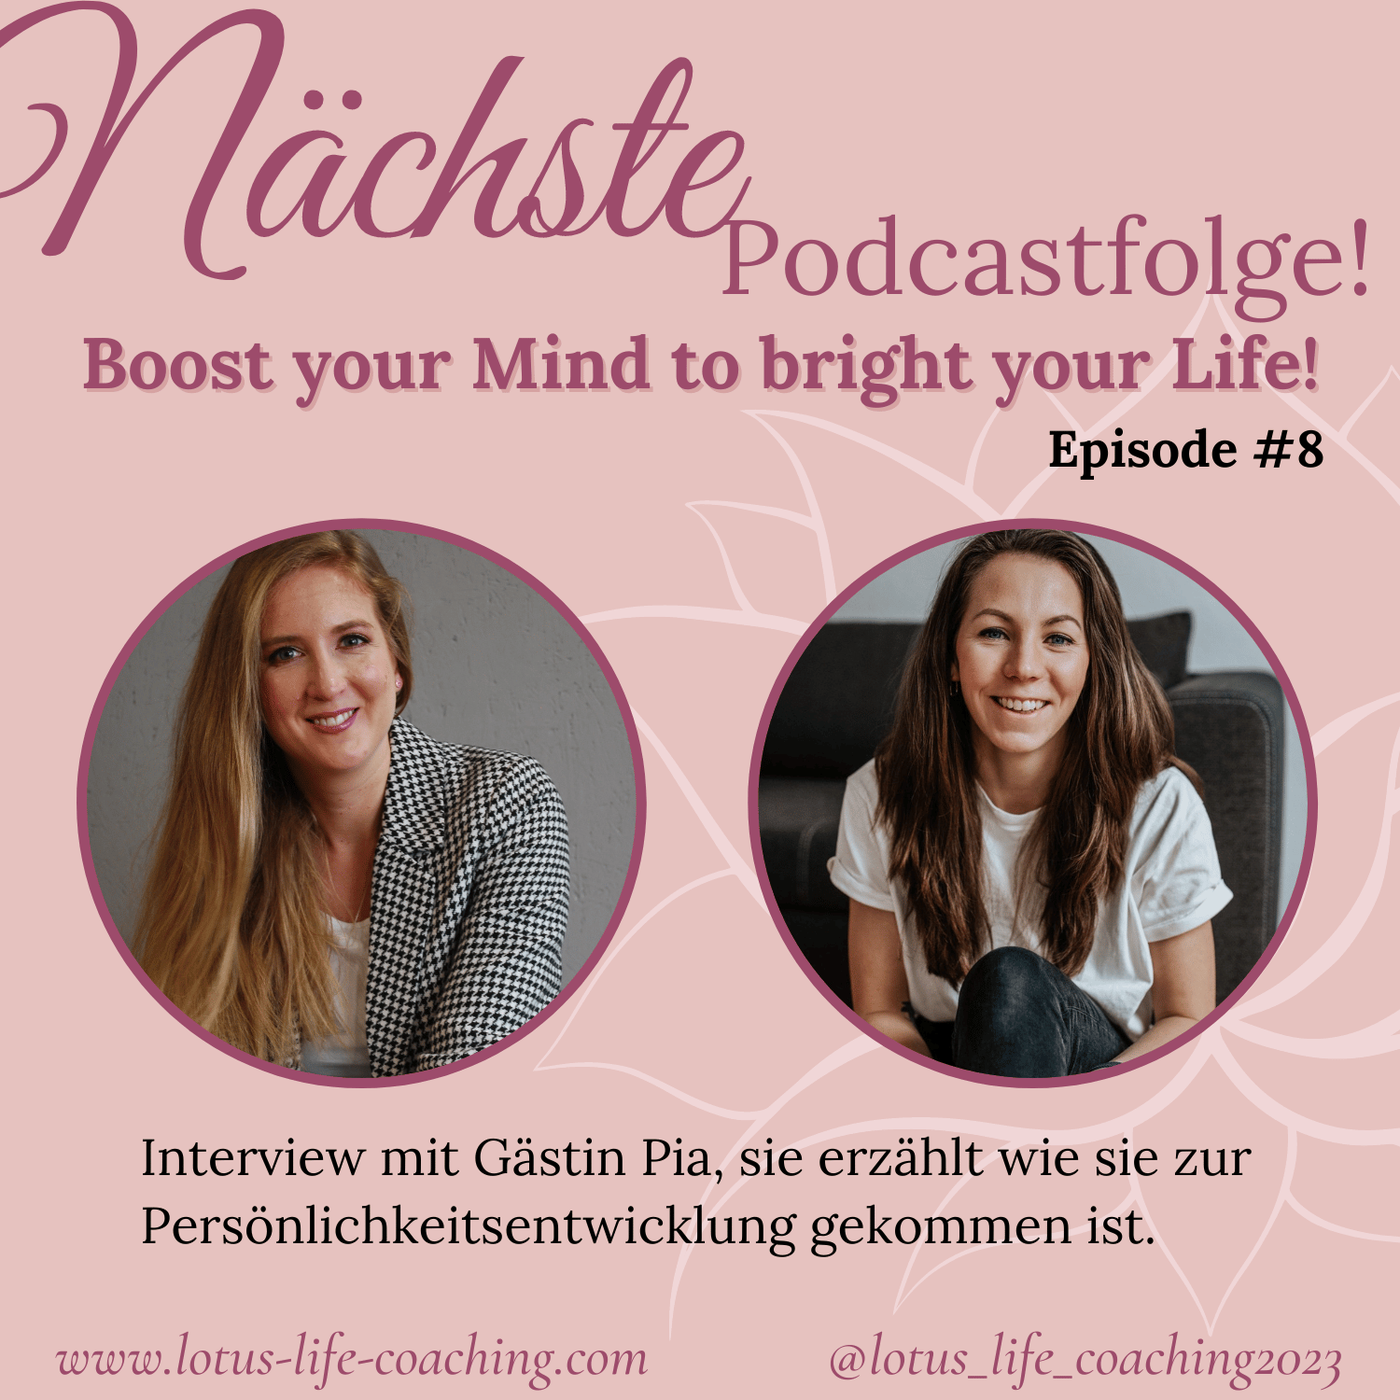 Episode #8 - Interview mit Gästin Pia, sie erzählt wie sie zur Persönlichkeitsentwicklung gekommen ist.